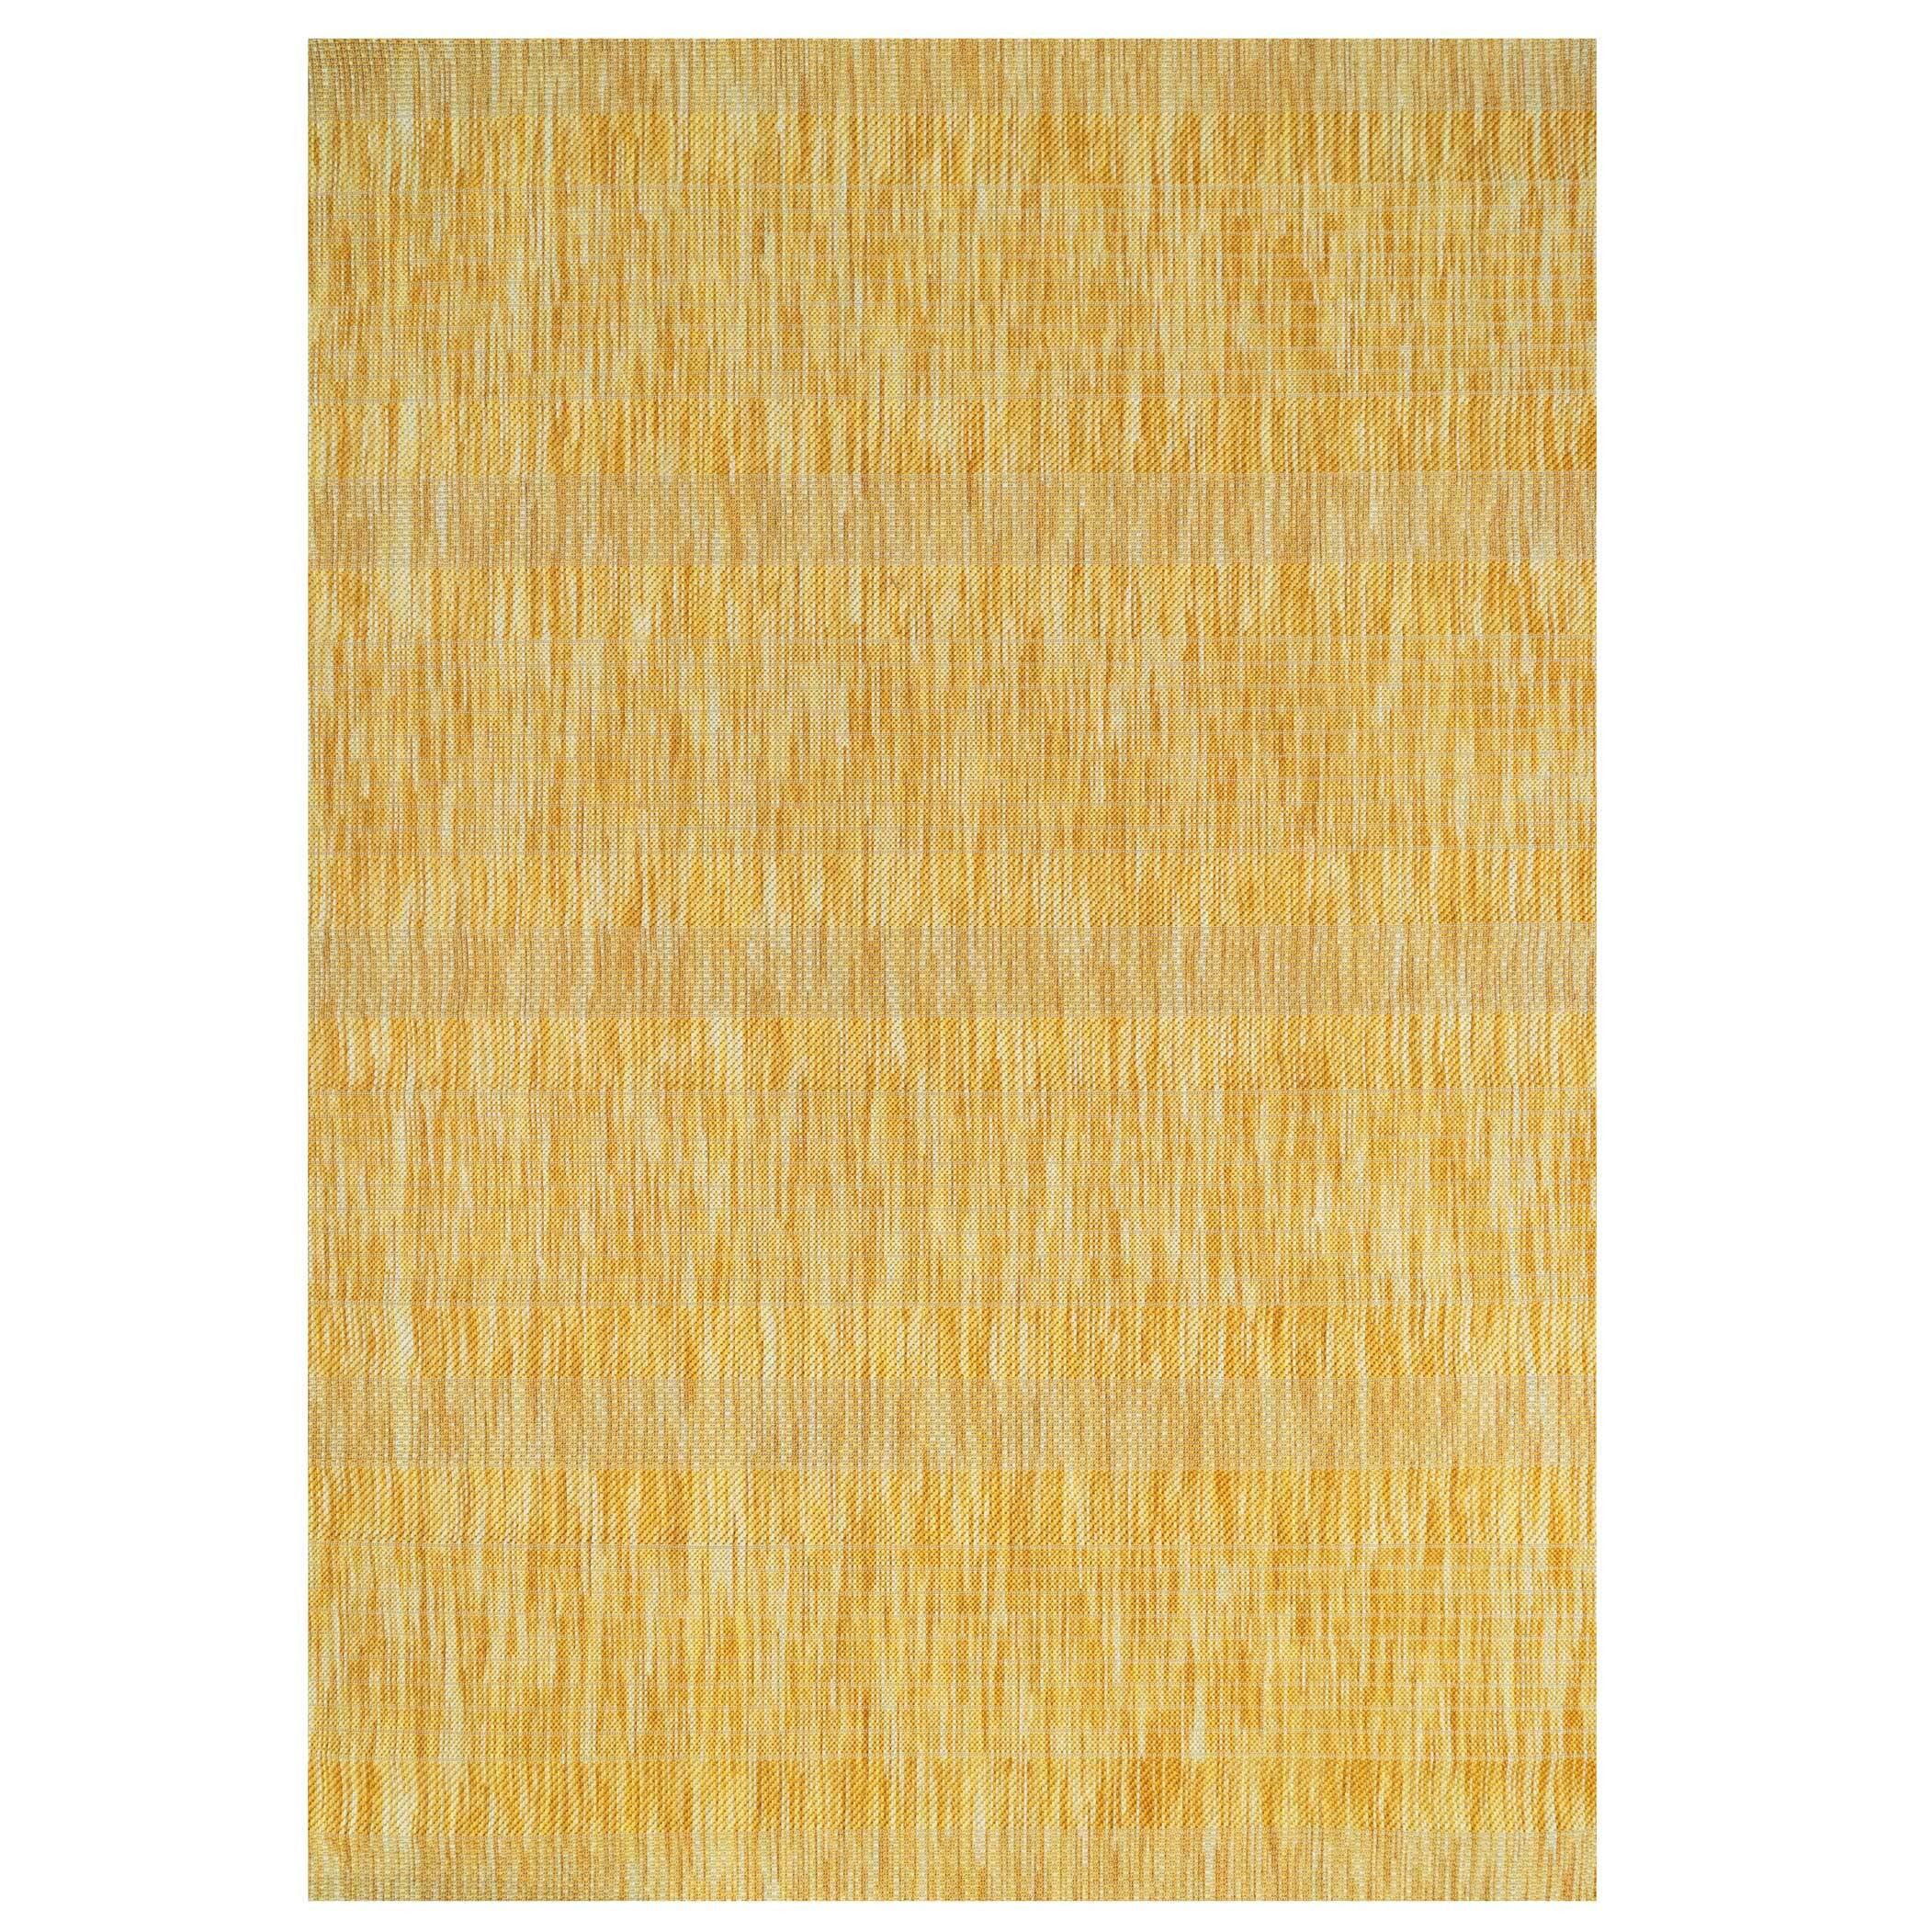 Mottled Yellow Indoor Outdoor Area Rug - Terrazza - Terrazza - 60cm x 110cm